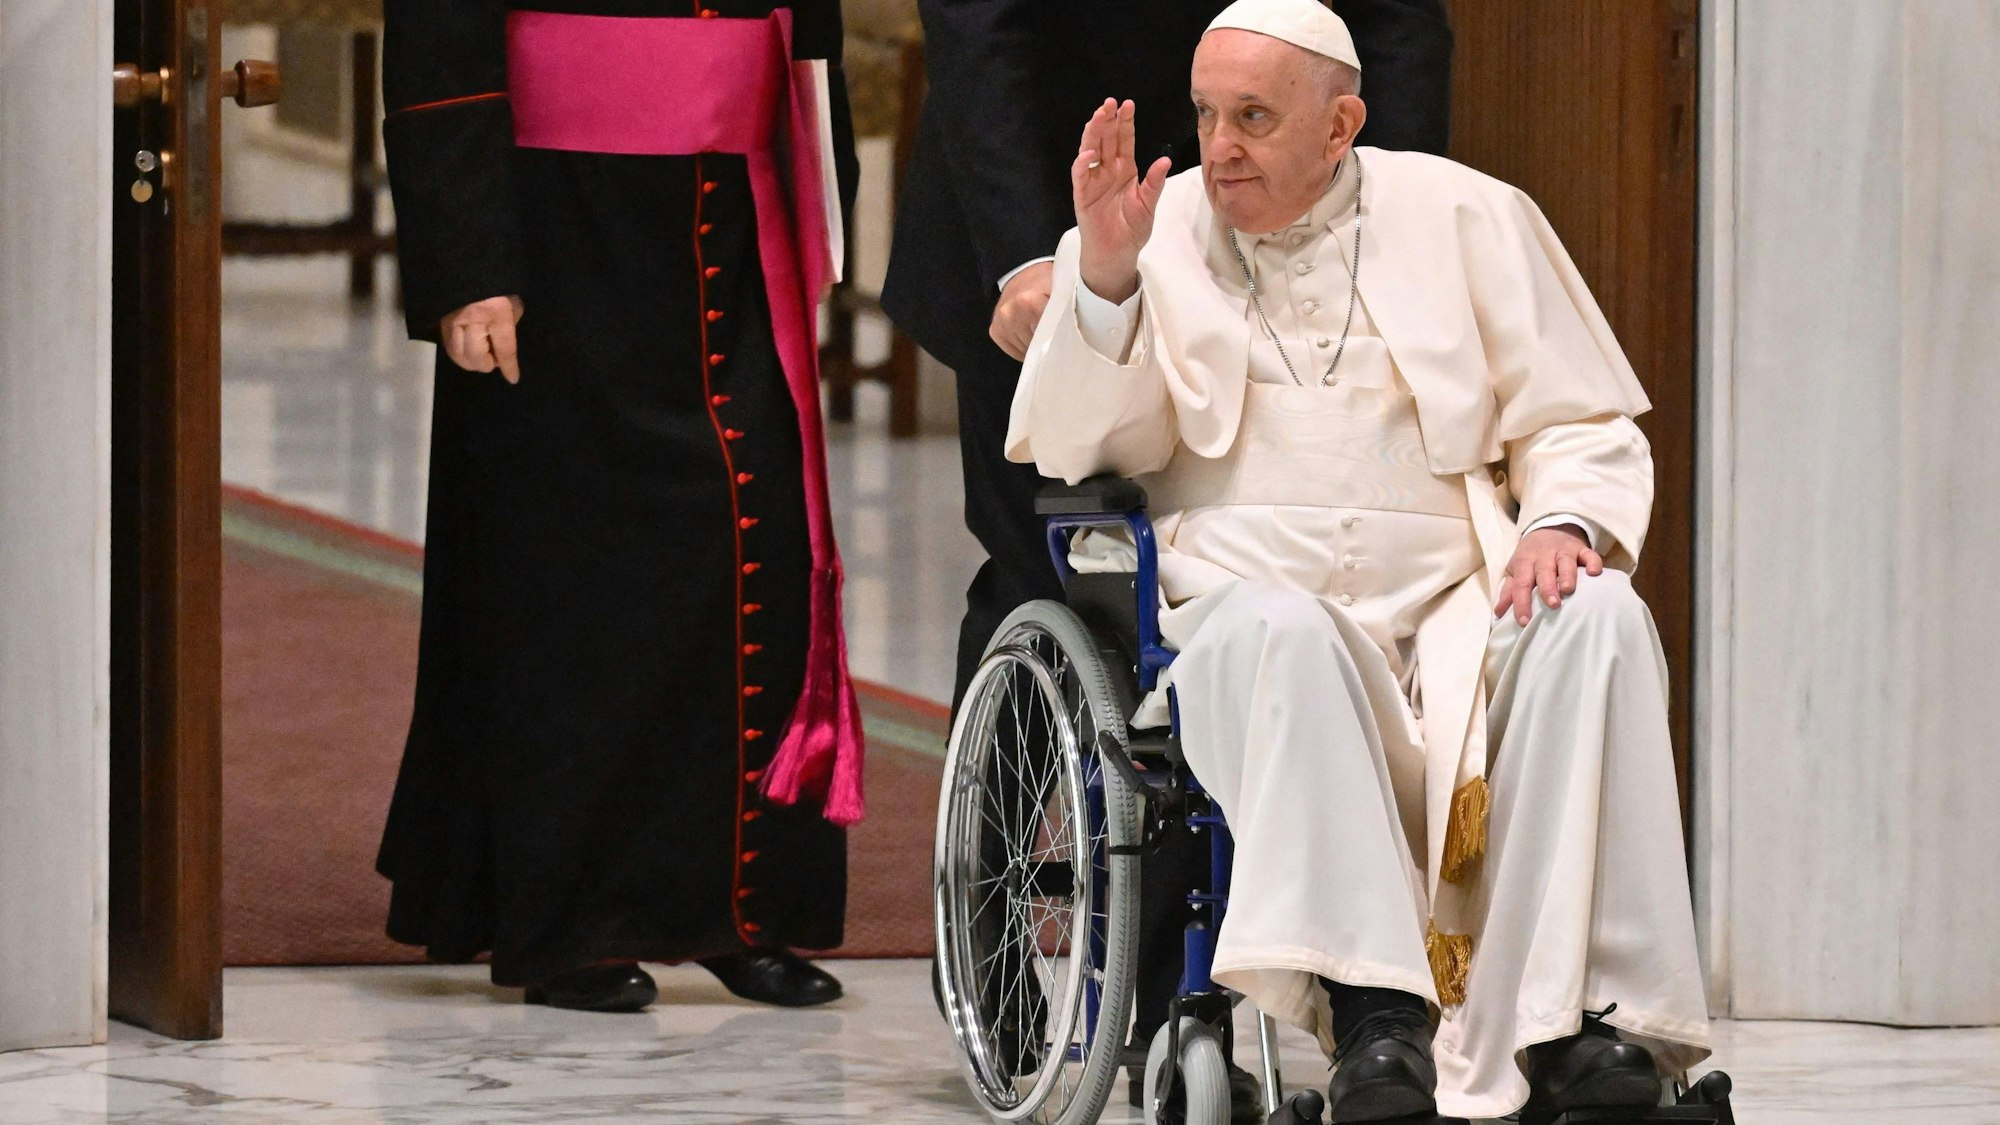 Im vergangenen Frühjahr musste das Oberhaupt der katholischen Kirche erstmals im Rollstuhl zu einer Audienz gefahren werden.